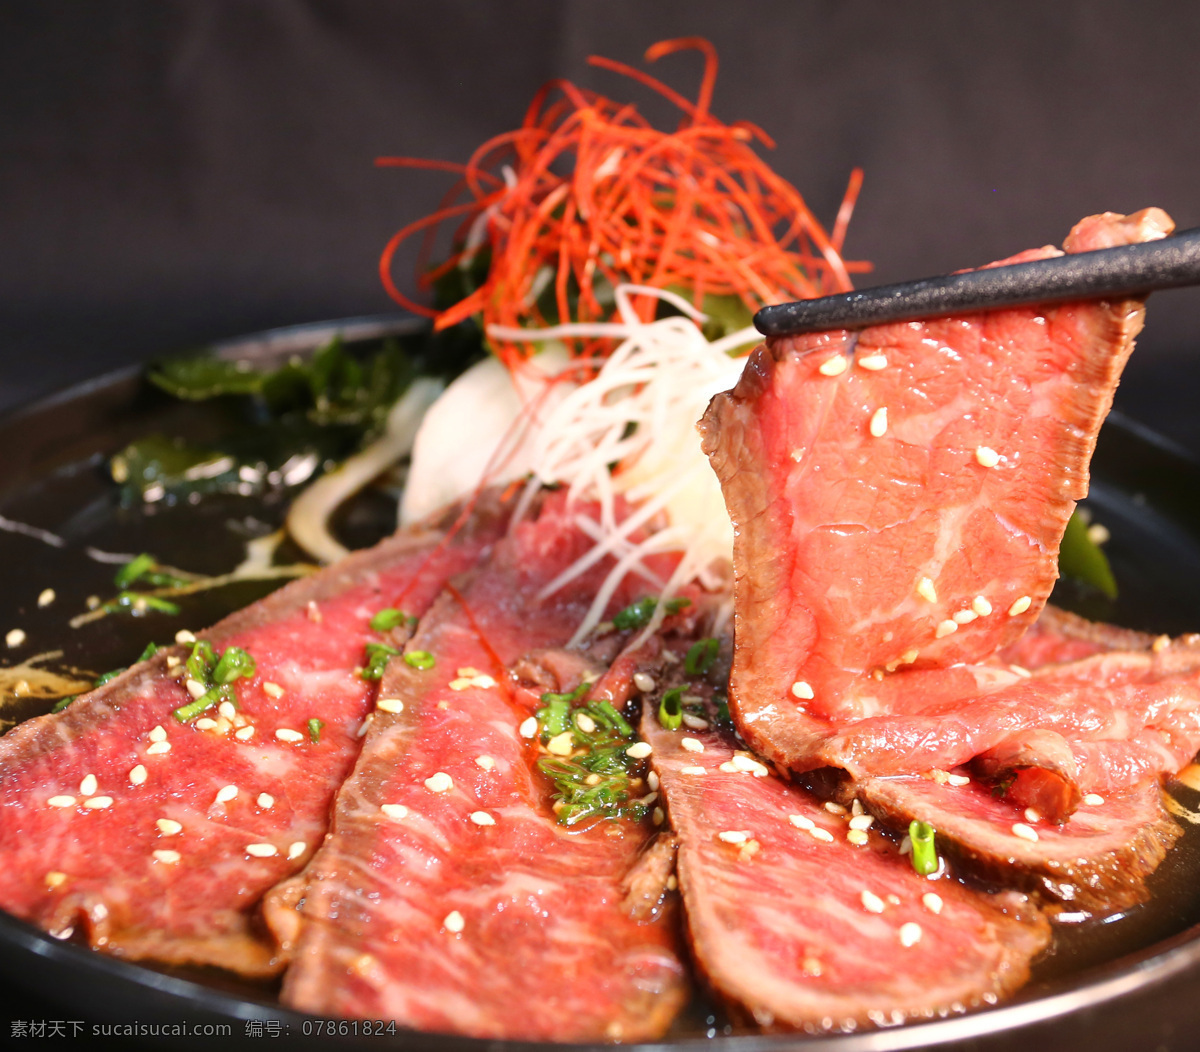 日式 生 牛肉 小菜 寿司 日本 生牛肉 拍照 餐饮美食